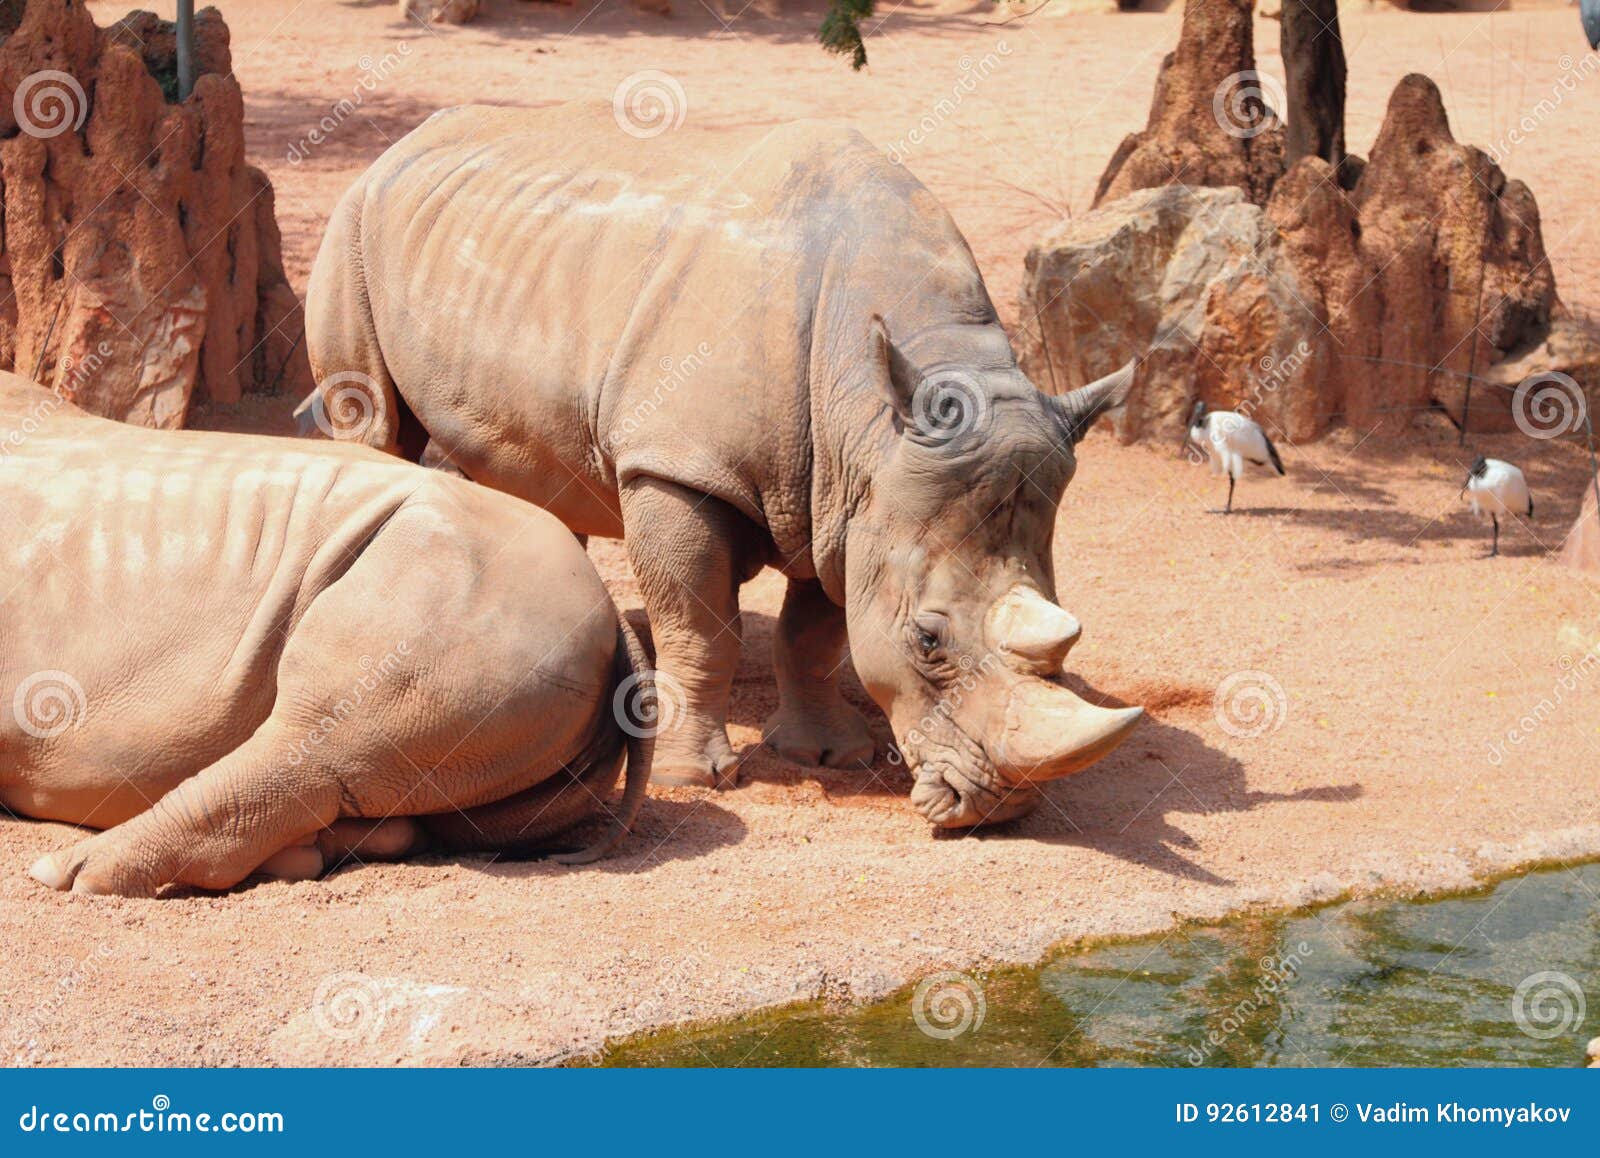 white rhinoceros in biopark. valencia, spain